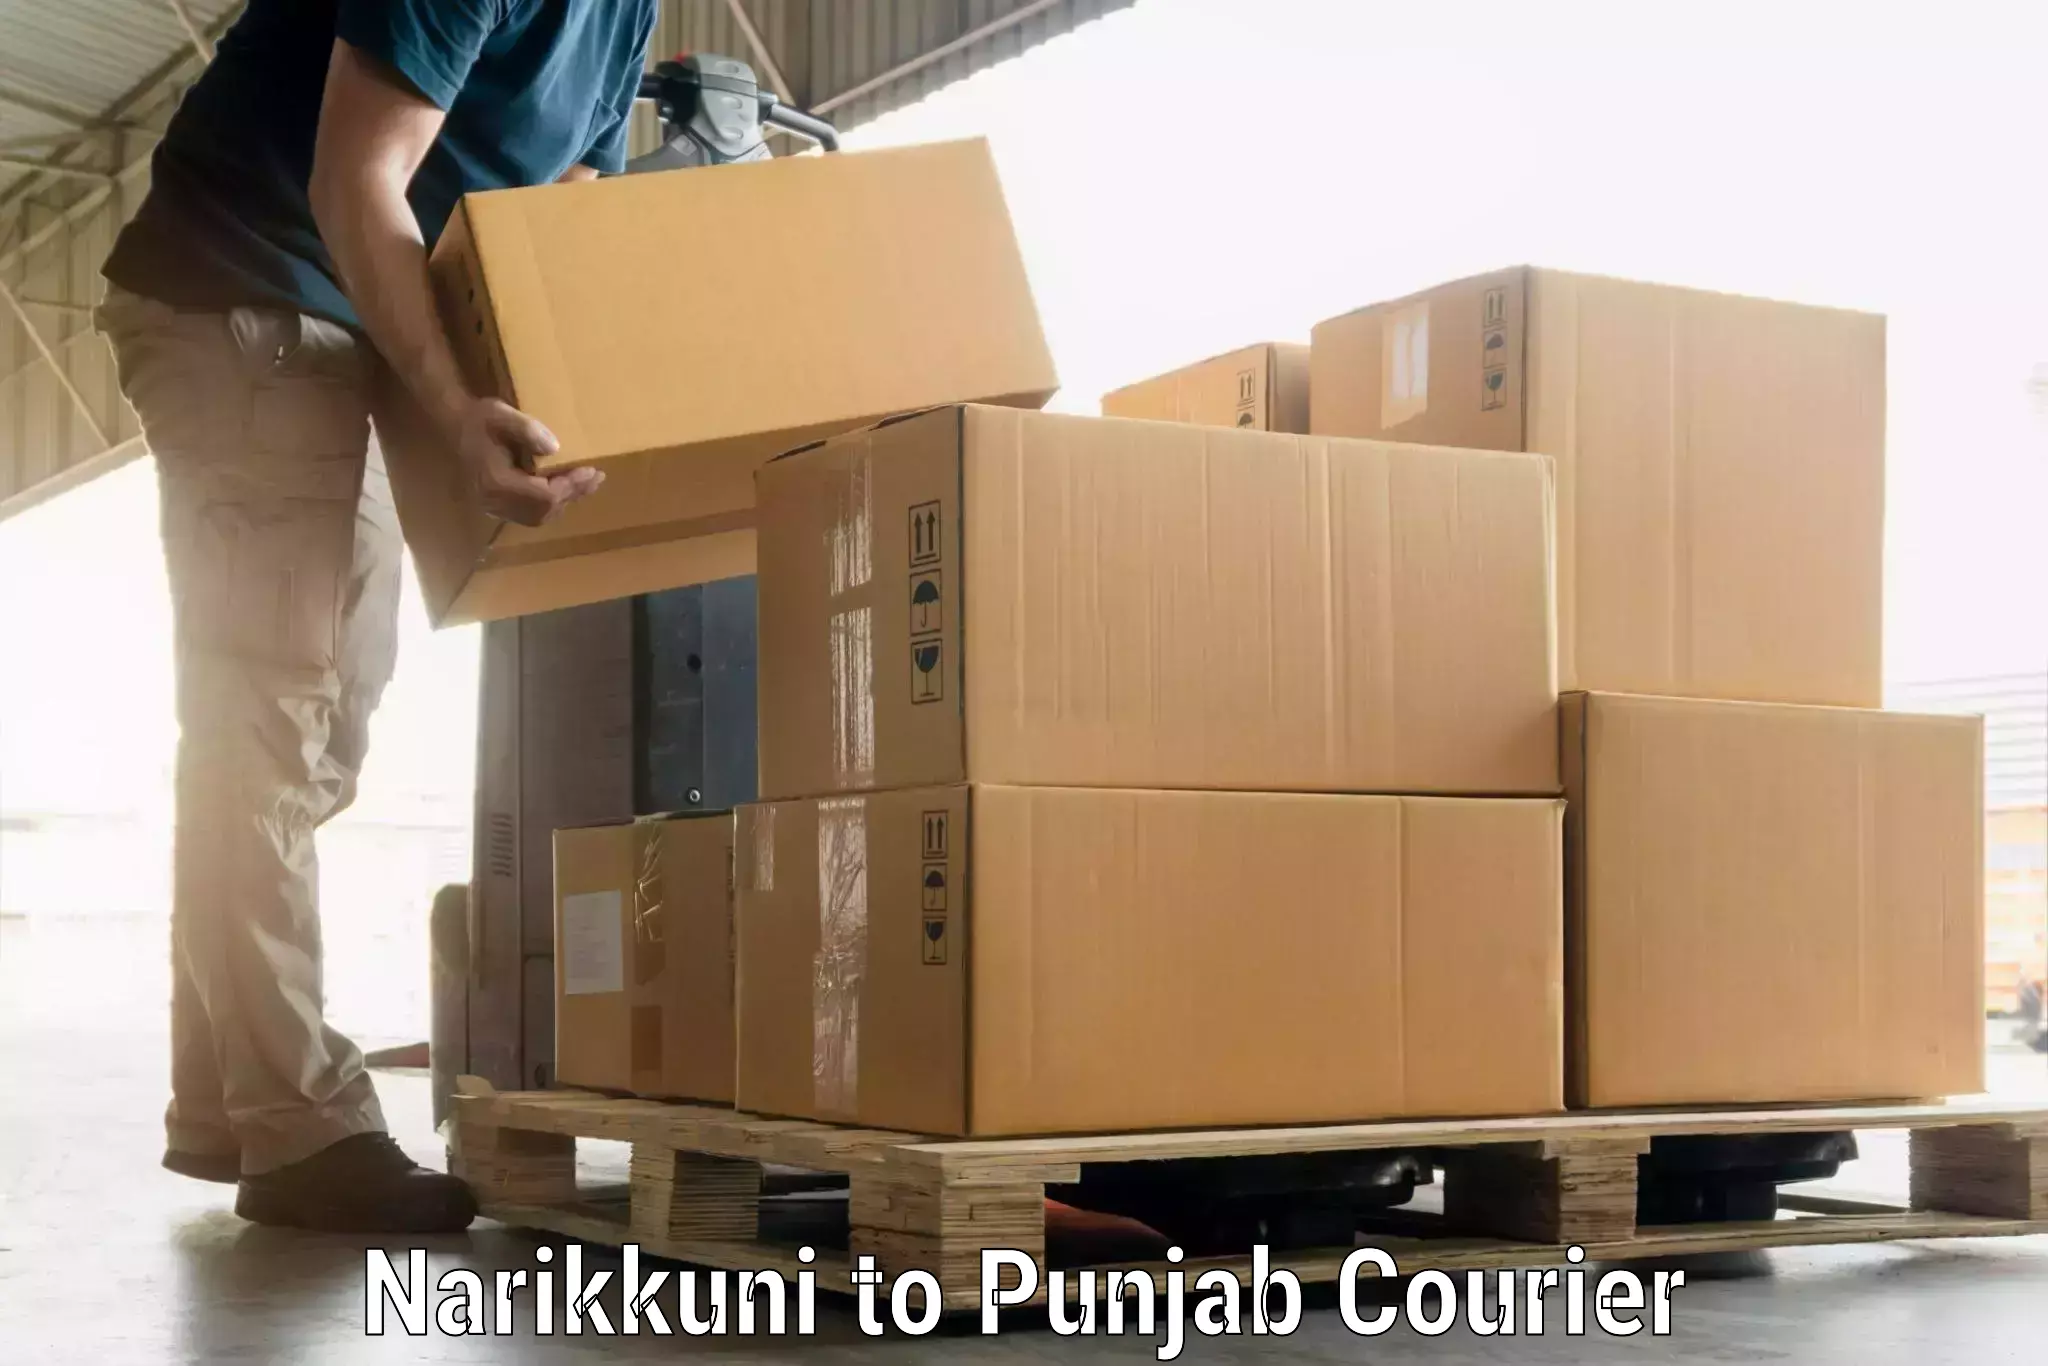 Urgent luggage shipment Narikkuni to Jalandhar